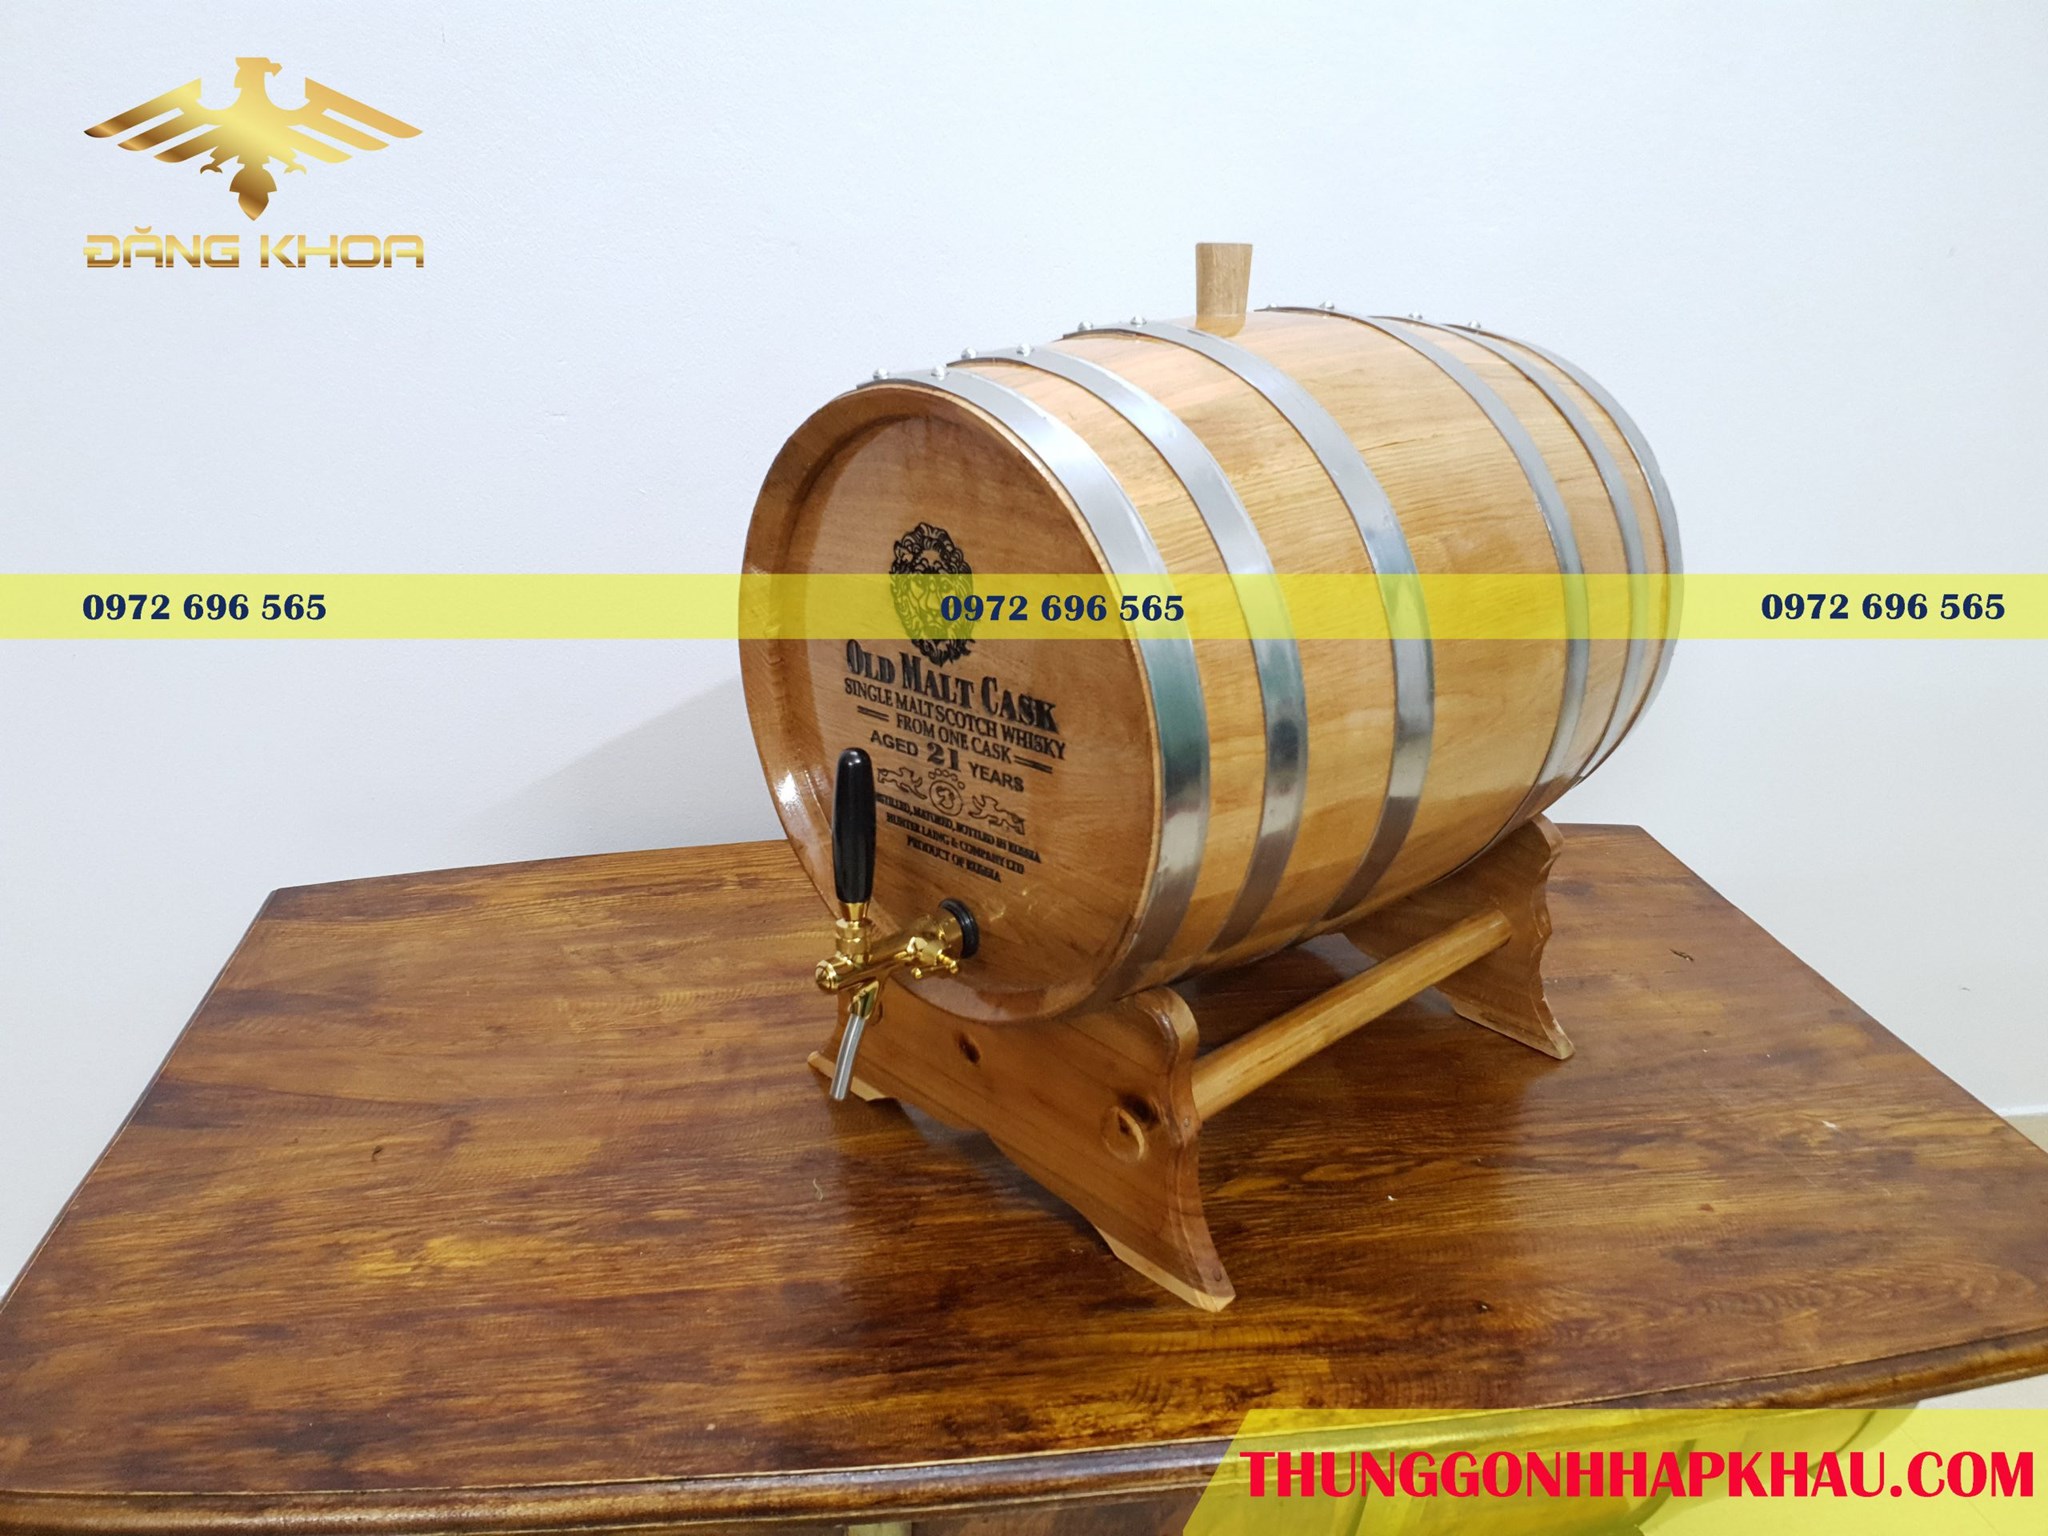 Tại sao sản xuất rượu lại sử dụng thùng gỗ sồi